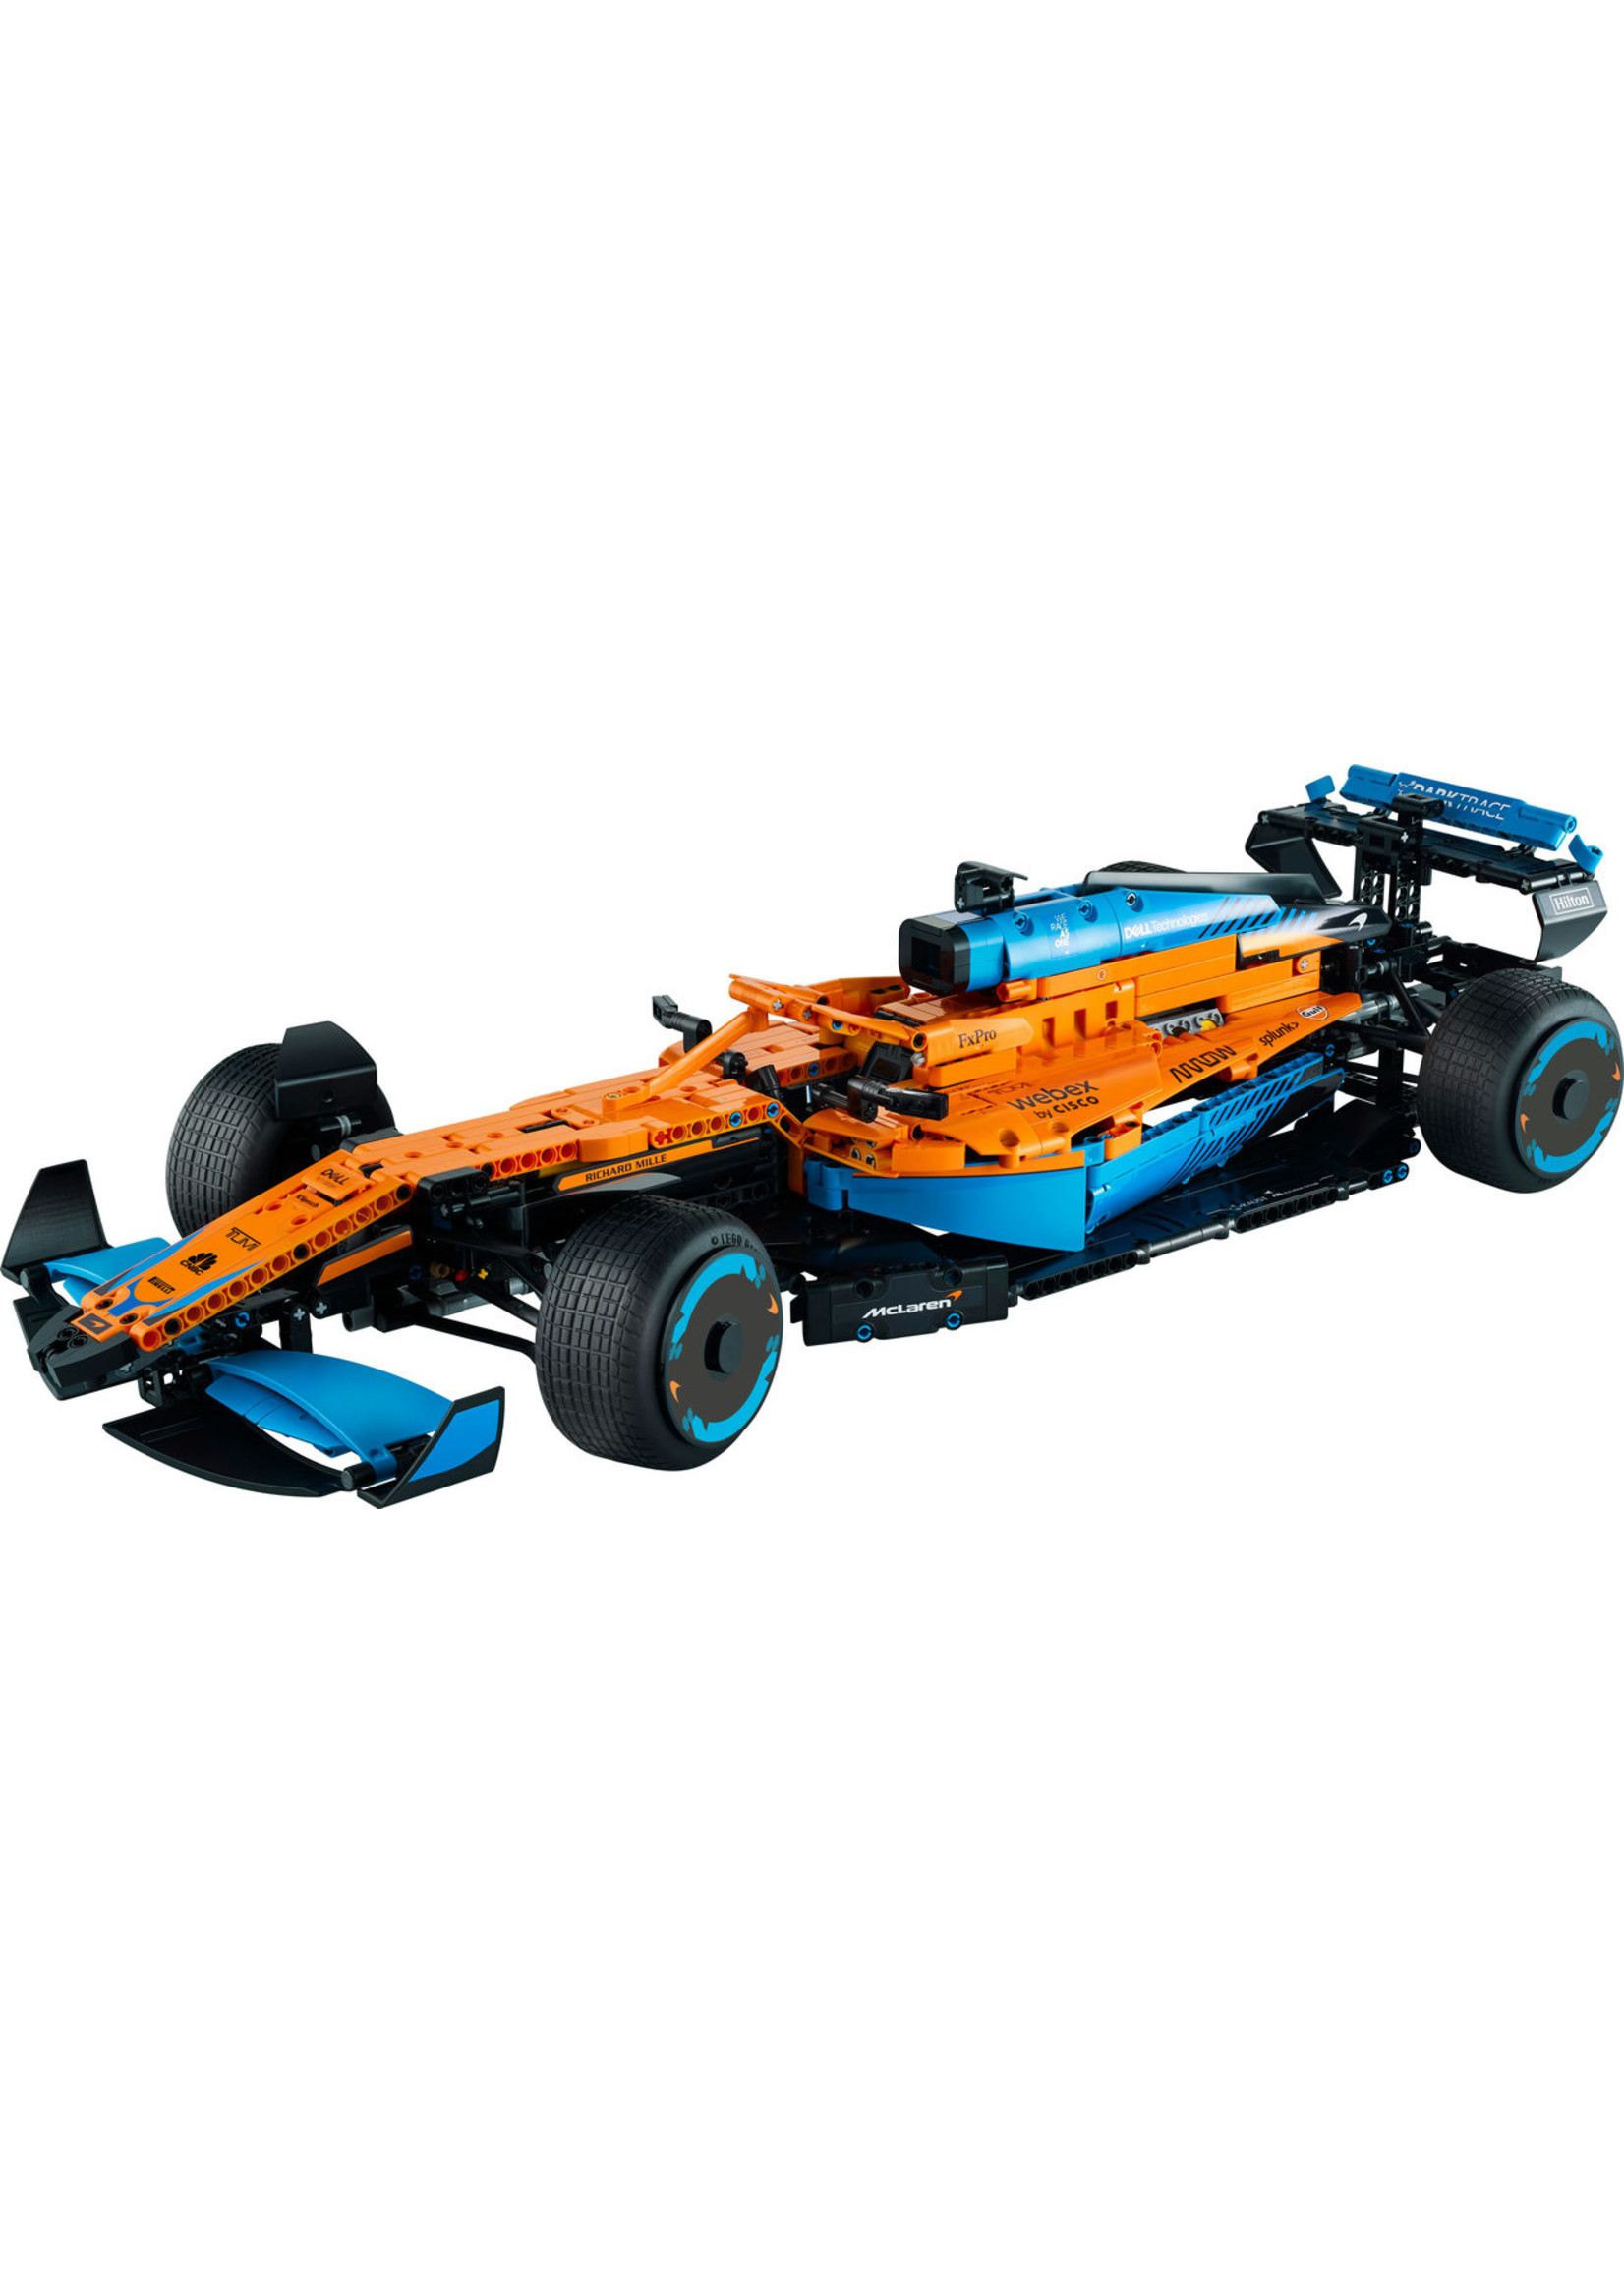 LEGO 42141 - McLaren Formula 1 Race Car